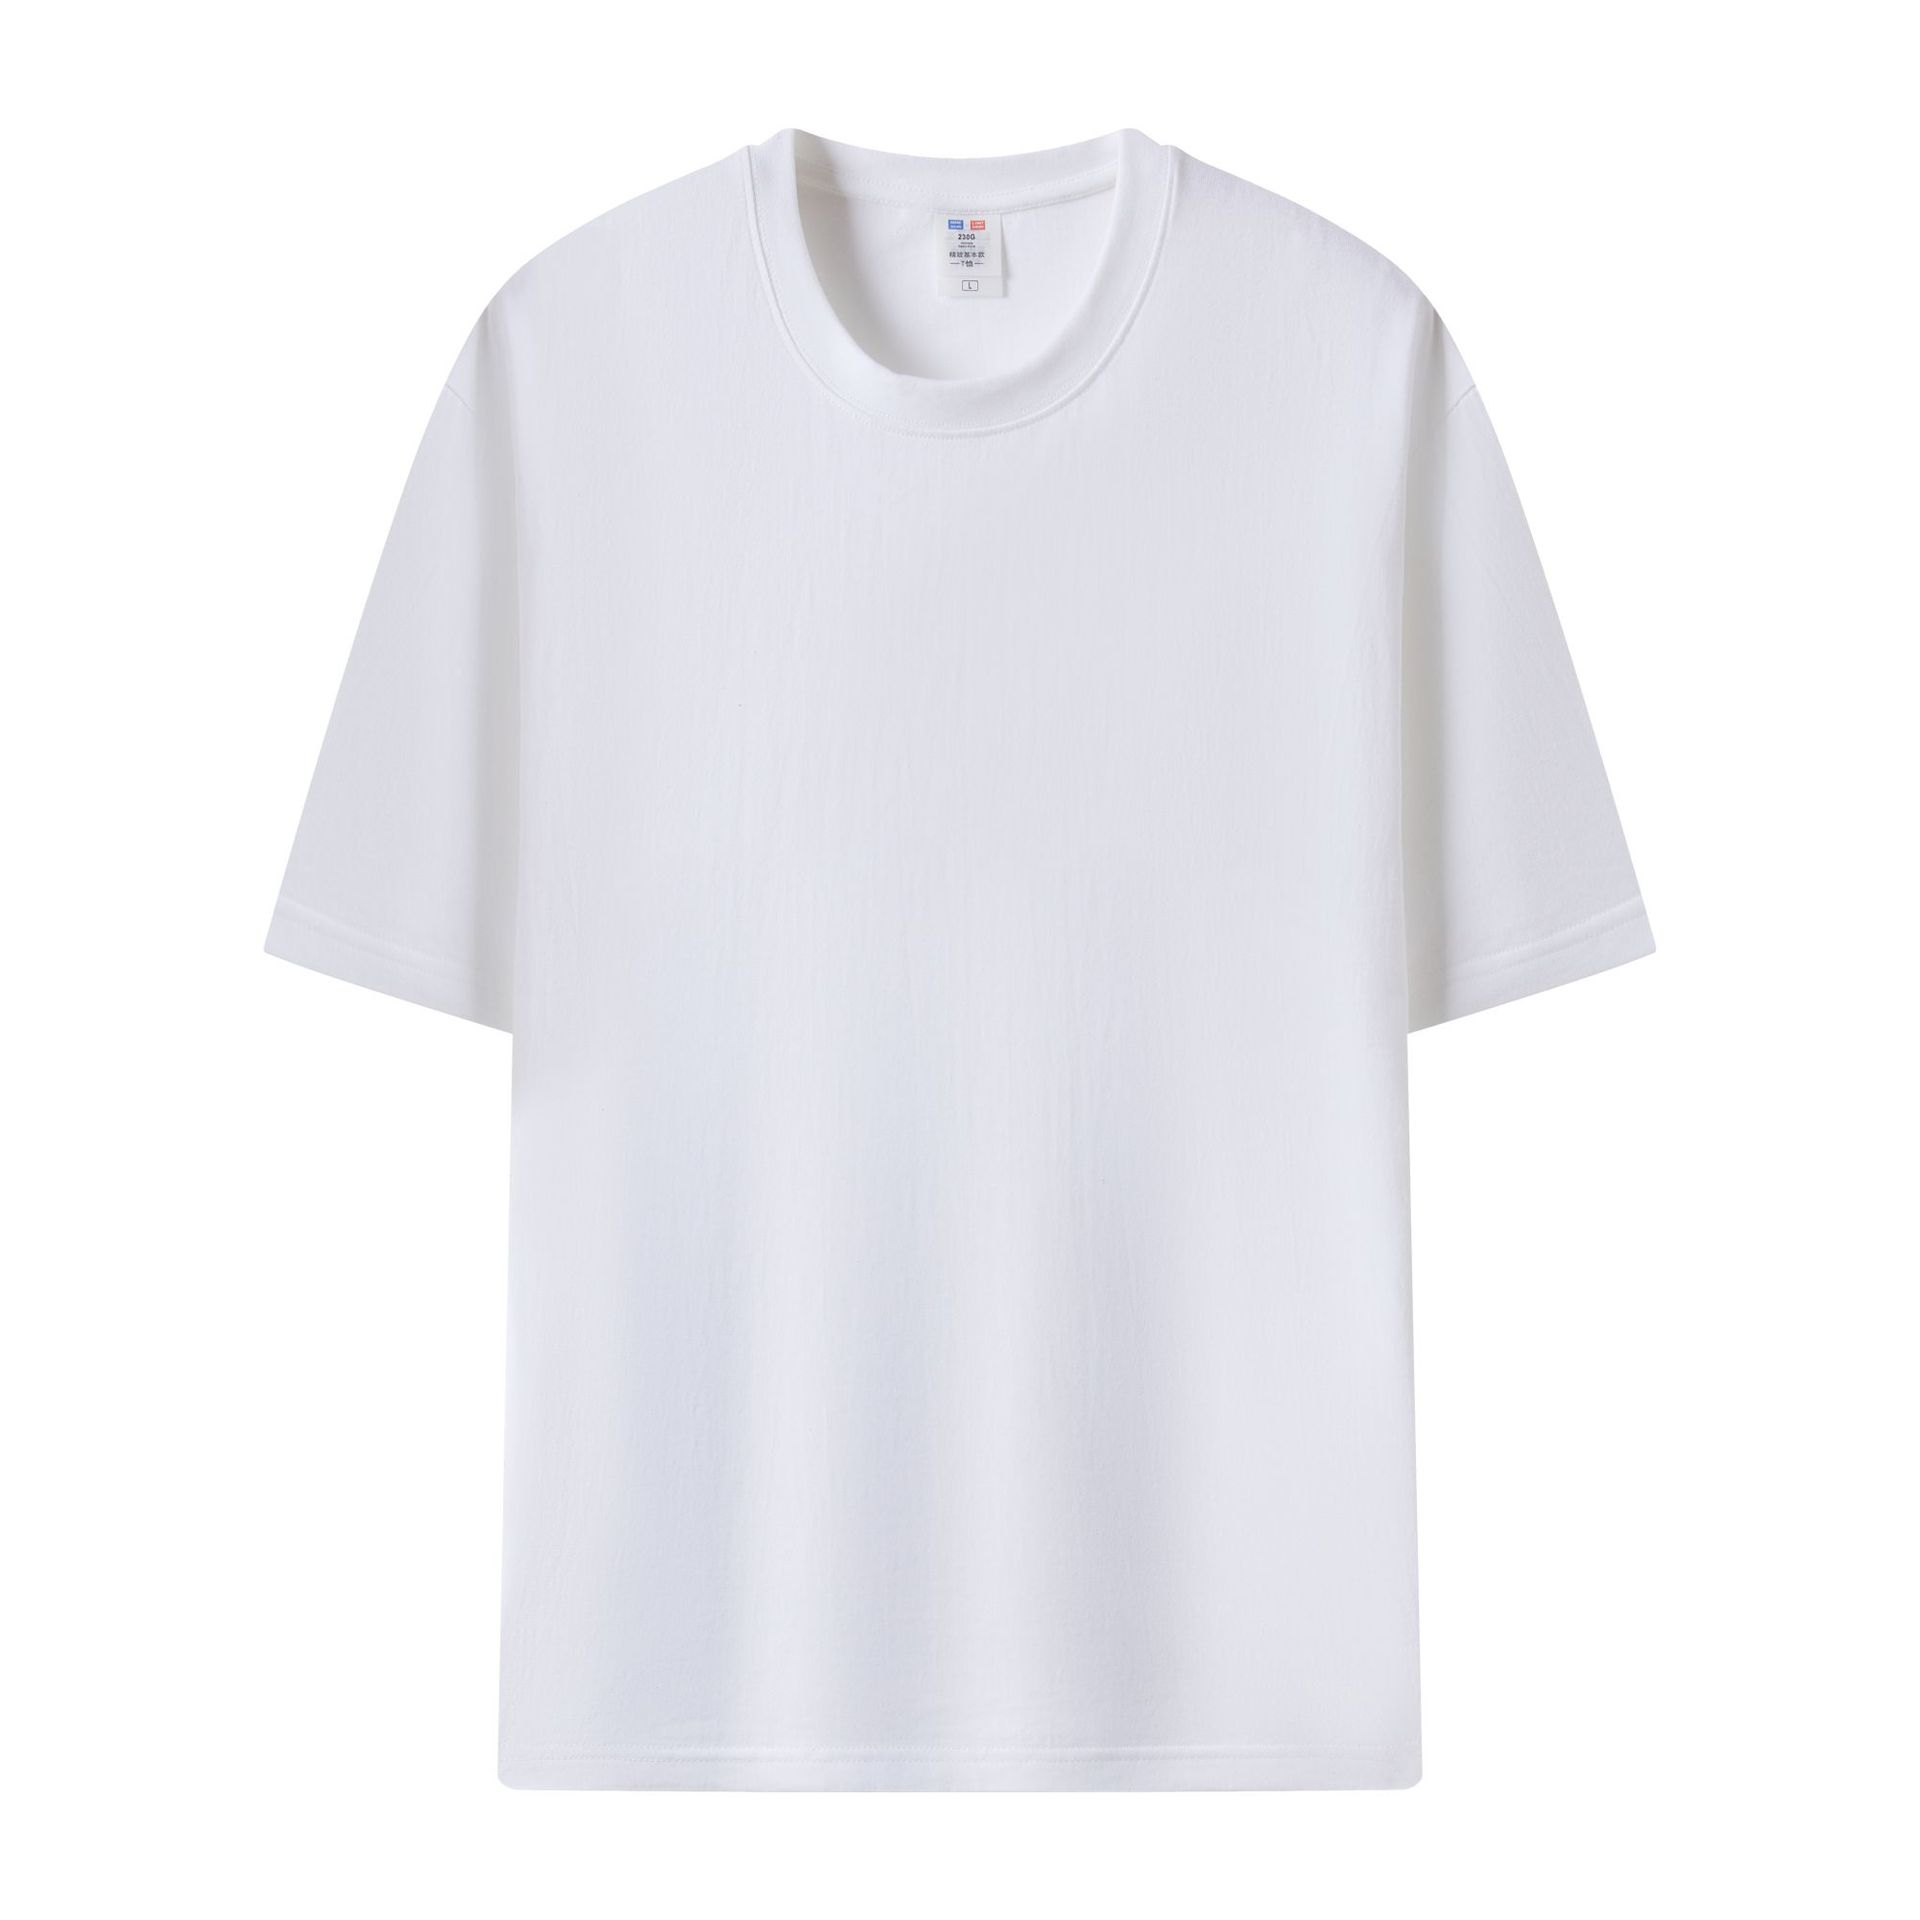 Professional Customized T-shirt Customized Cotton Printed Logo Advertising Shirt Large Size round Neck Short Sleeve Customized